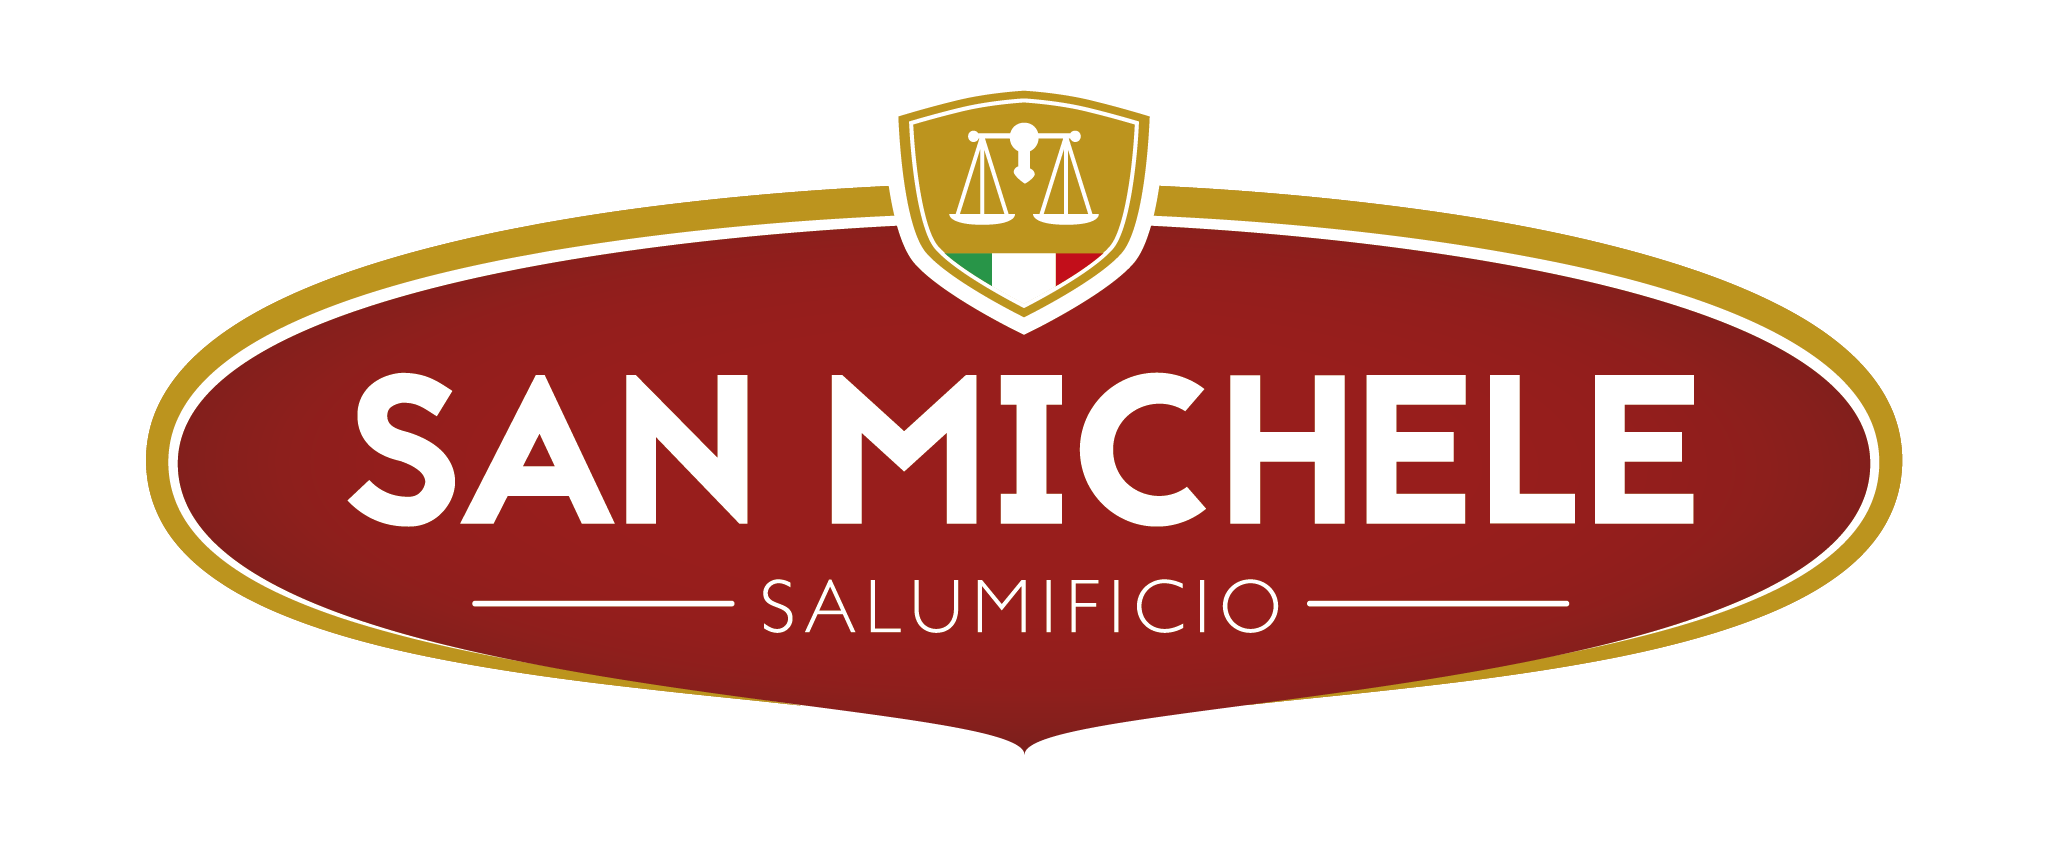 SALUMIFICIO SAN MICHELE S.P.A.